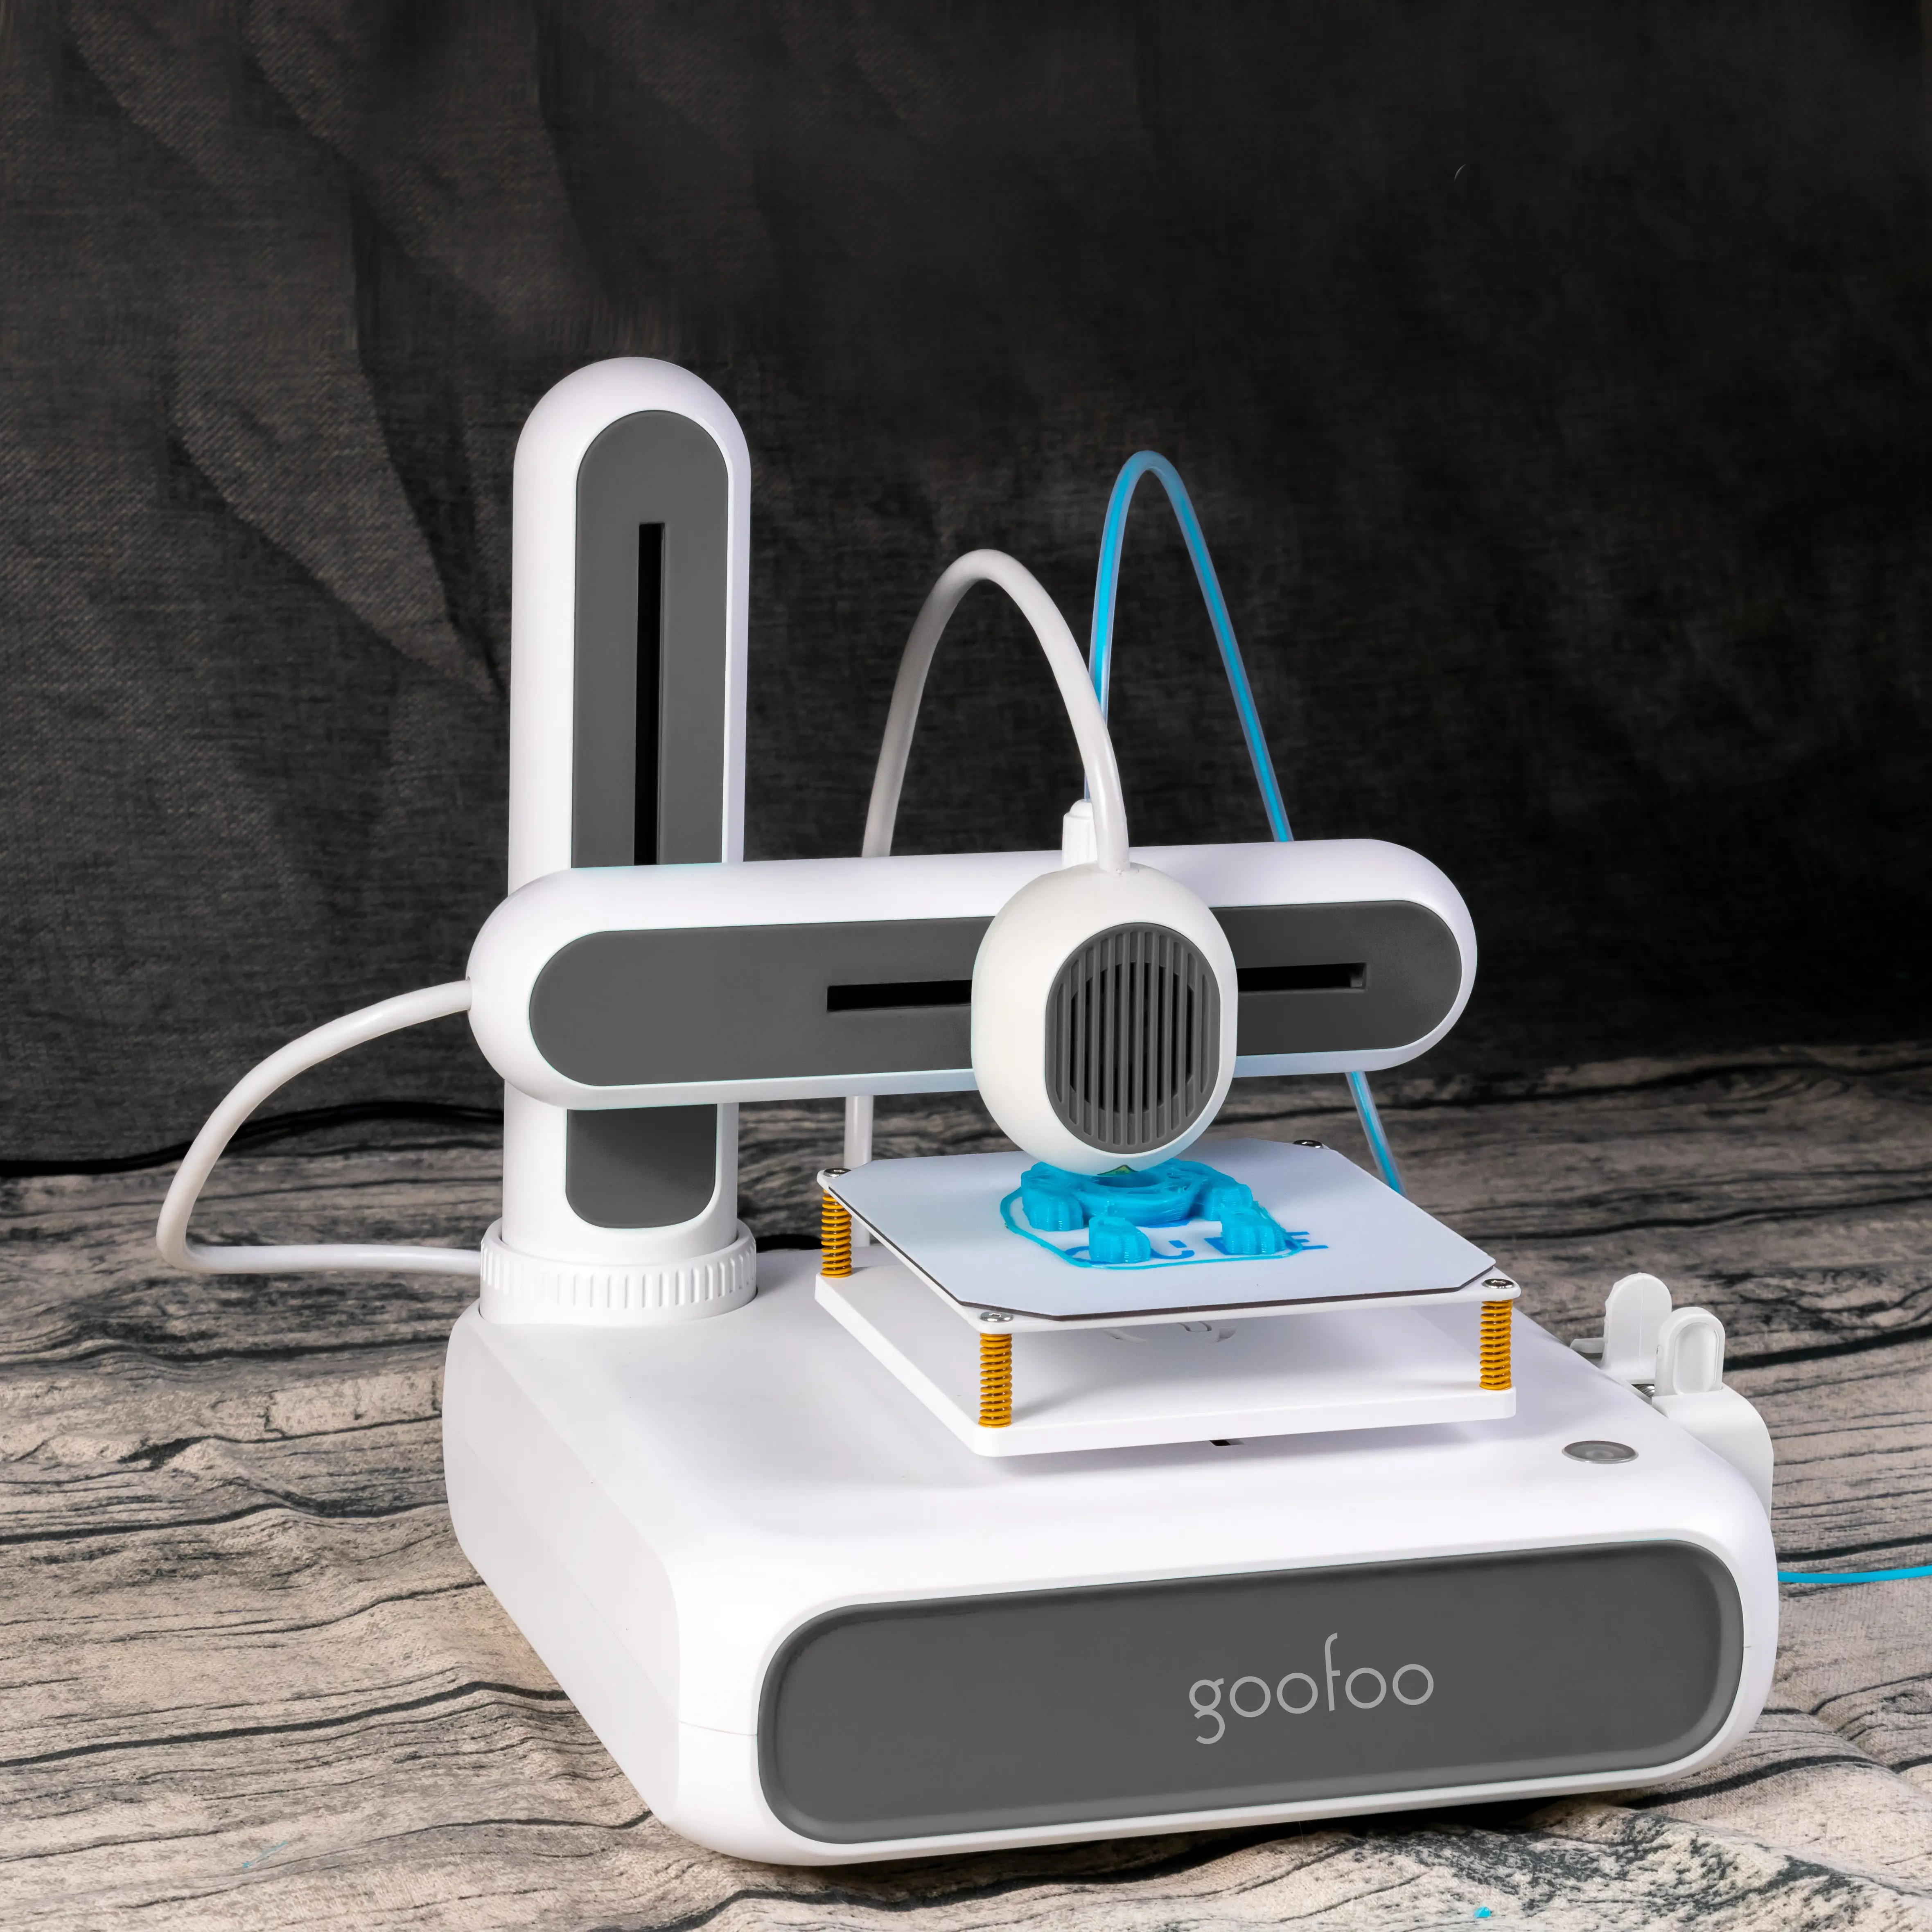 Mini Tự động san lấp mặt bằng máy in 3D người mới bắt đầu nhập cảnh cấp độ tiếng ồn thấp sử dụng PLA TPU 1.75mm Filament in Kích thước 80*80*80mm